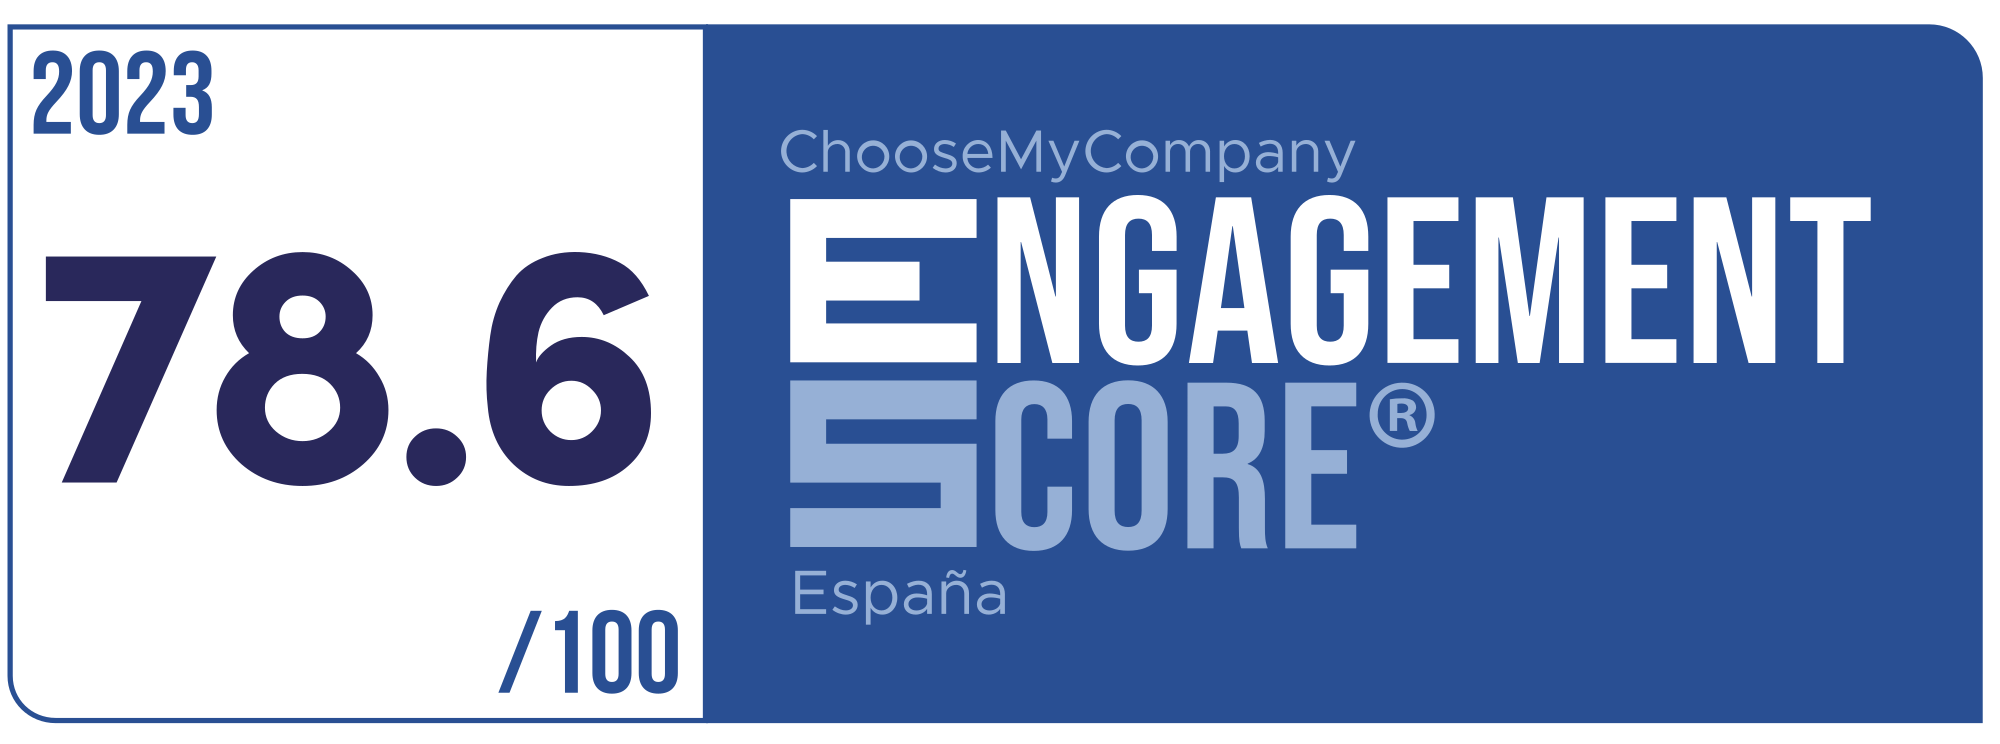 Label Engagement Score 2023 España